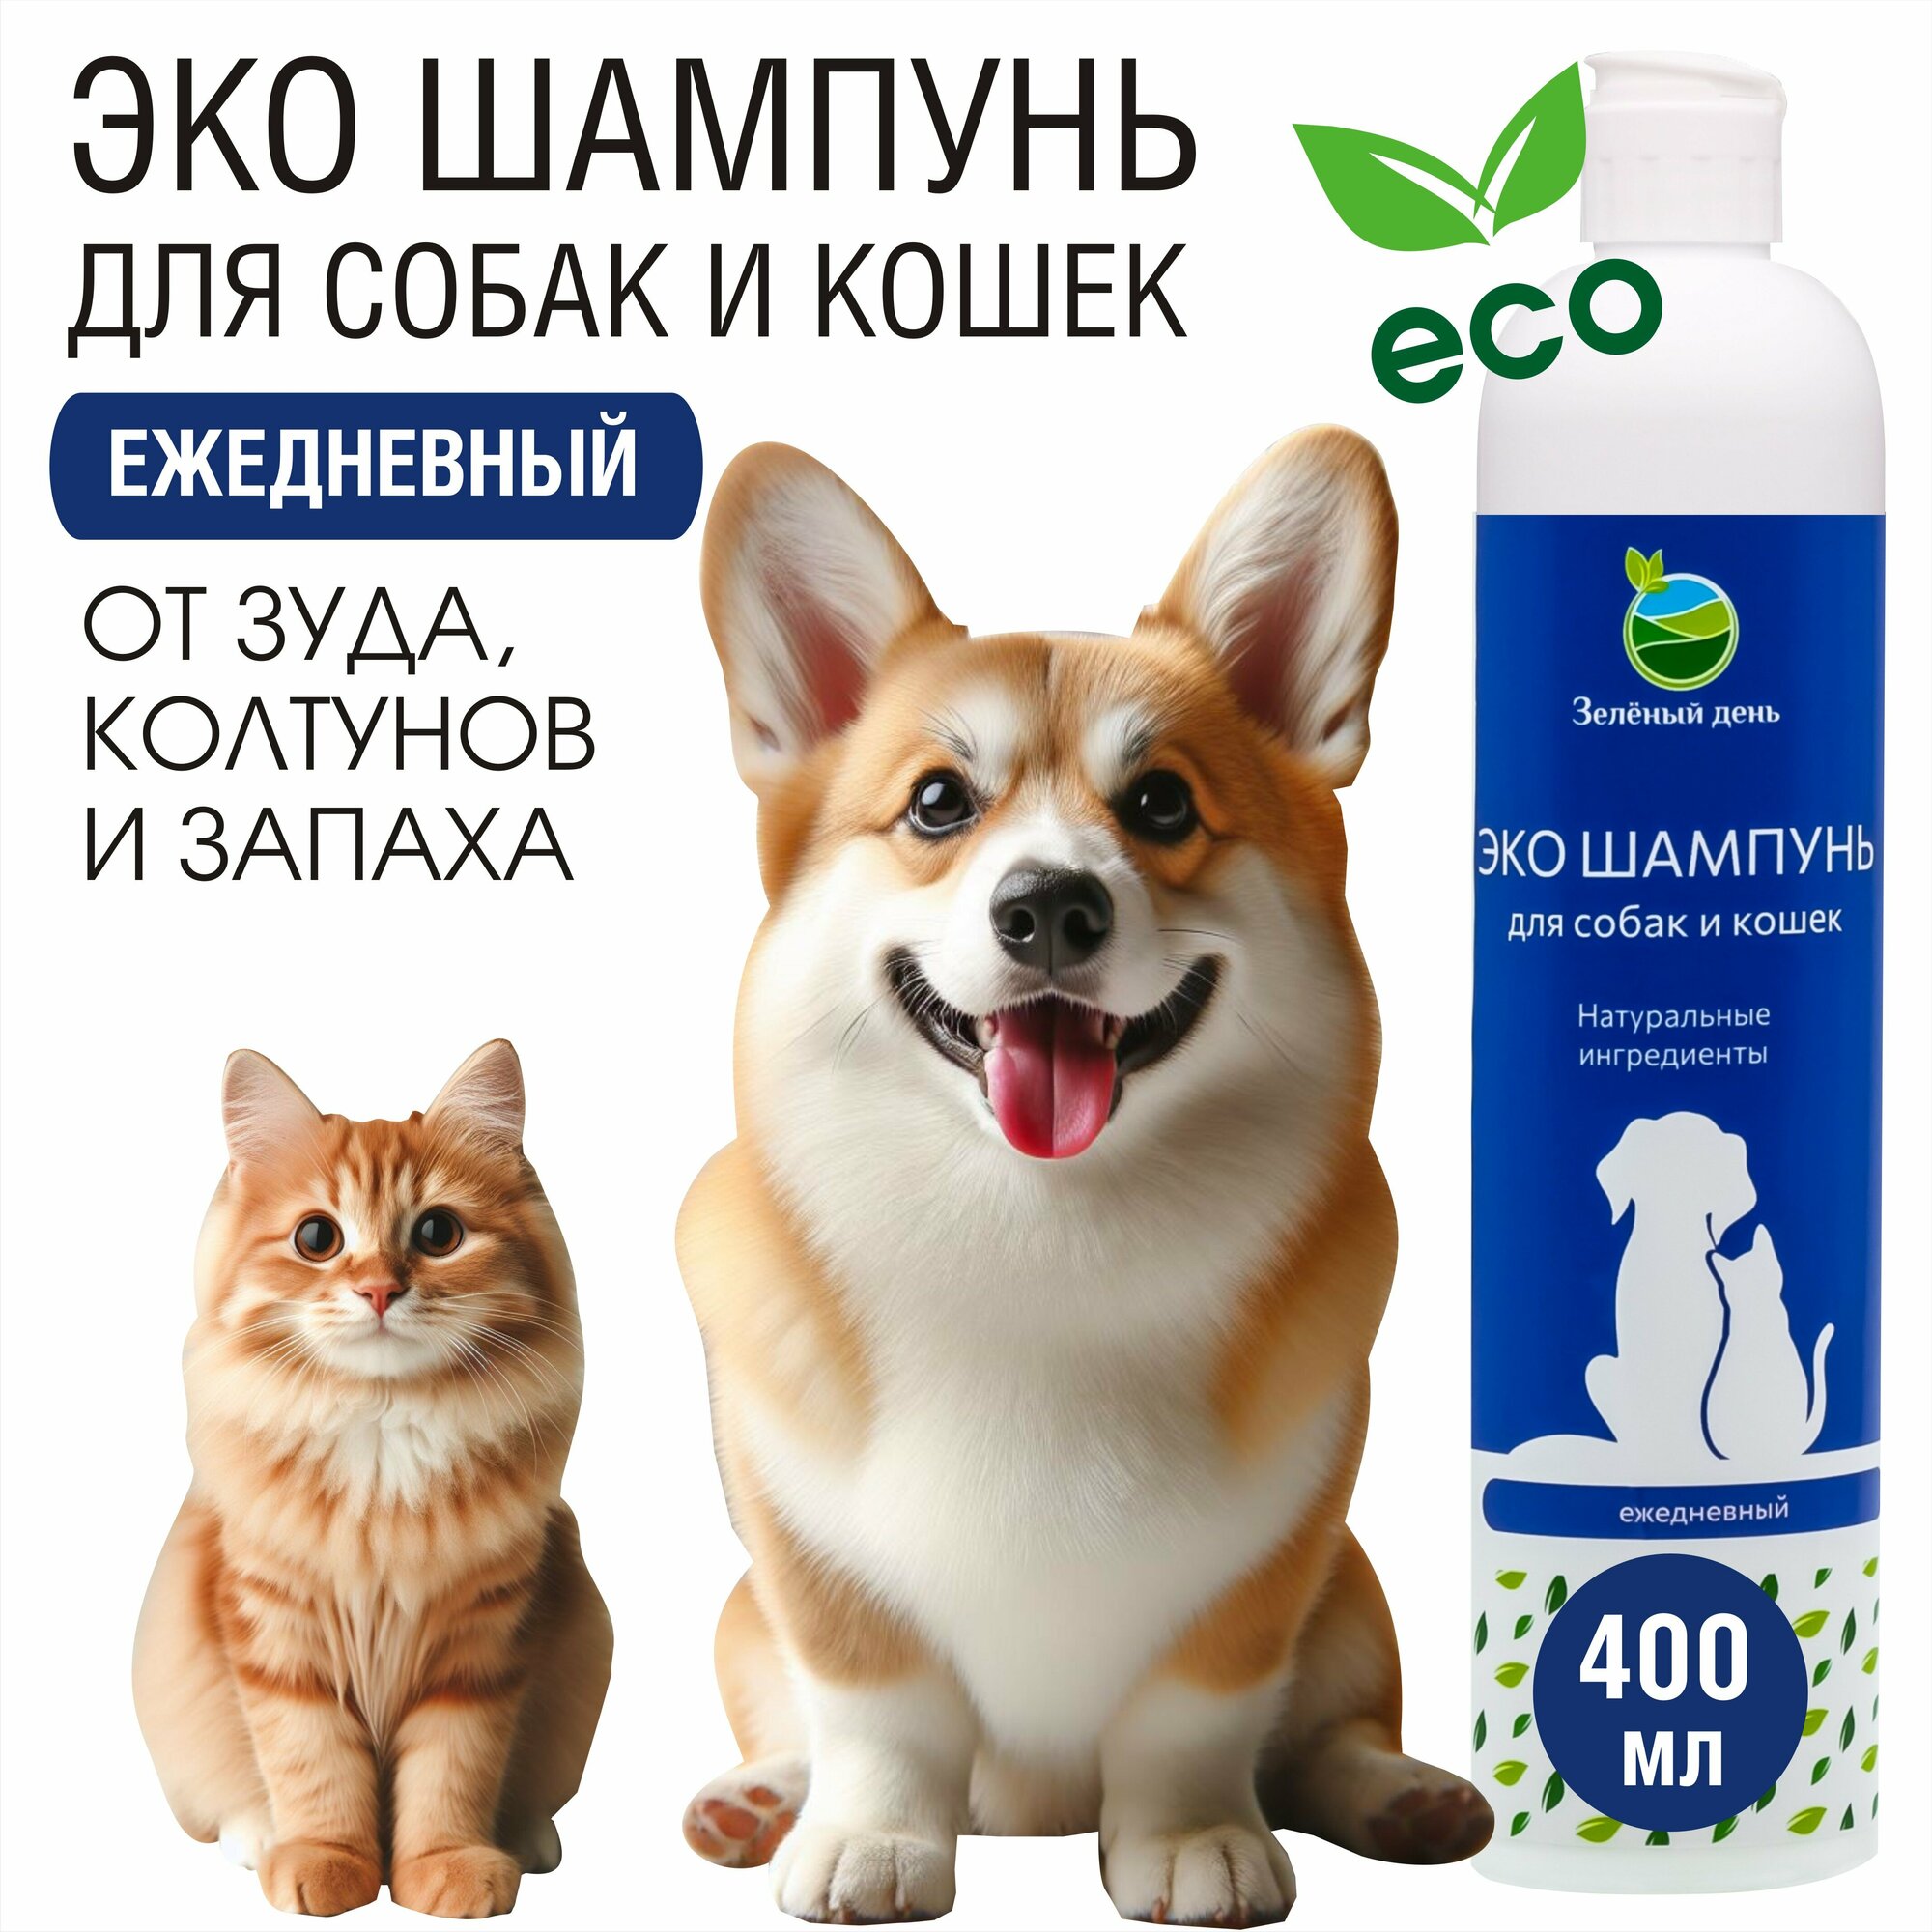 Шампунь для собак и кошек для ежедневного применения с календулой, ромашкой, мятой 400 мл